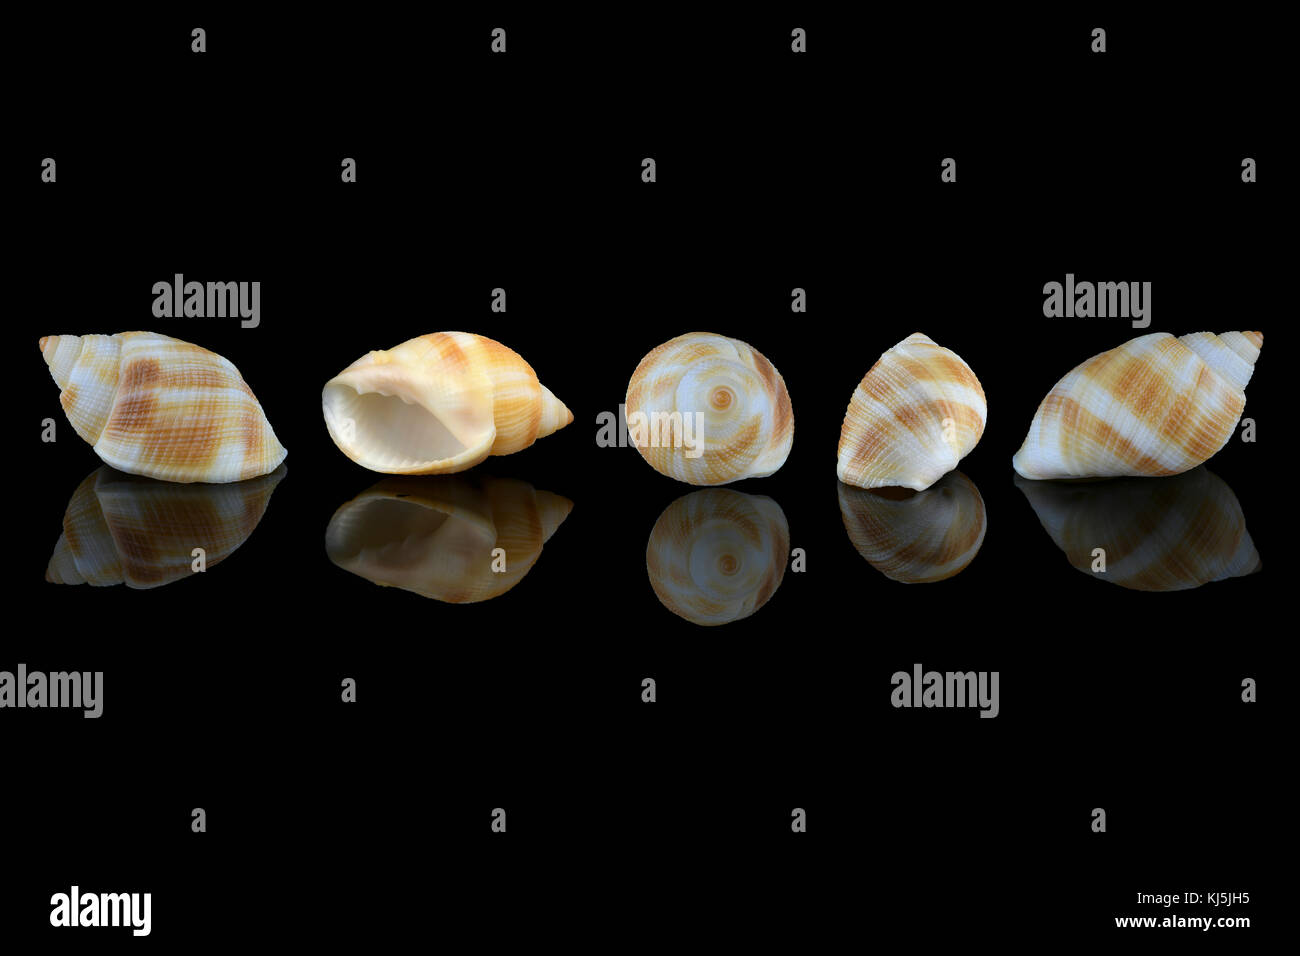 Nassarius Muschelschnecken, gewöhnlicher Name nassa Schlammschnecken (USA) oder Hundehühnchen (UK). Meeresschnecken, Familie Nassariidae. L 3,5xW2 x H 1,8 cm. Gefunden in Dub Stockfoto